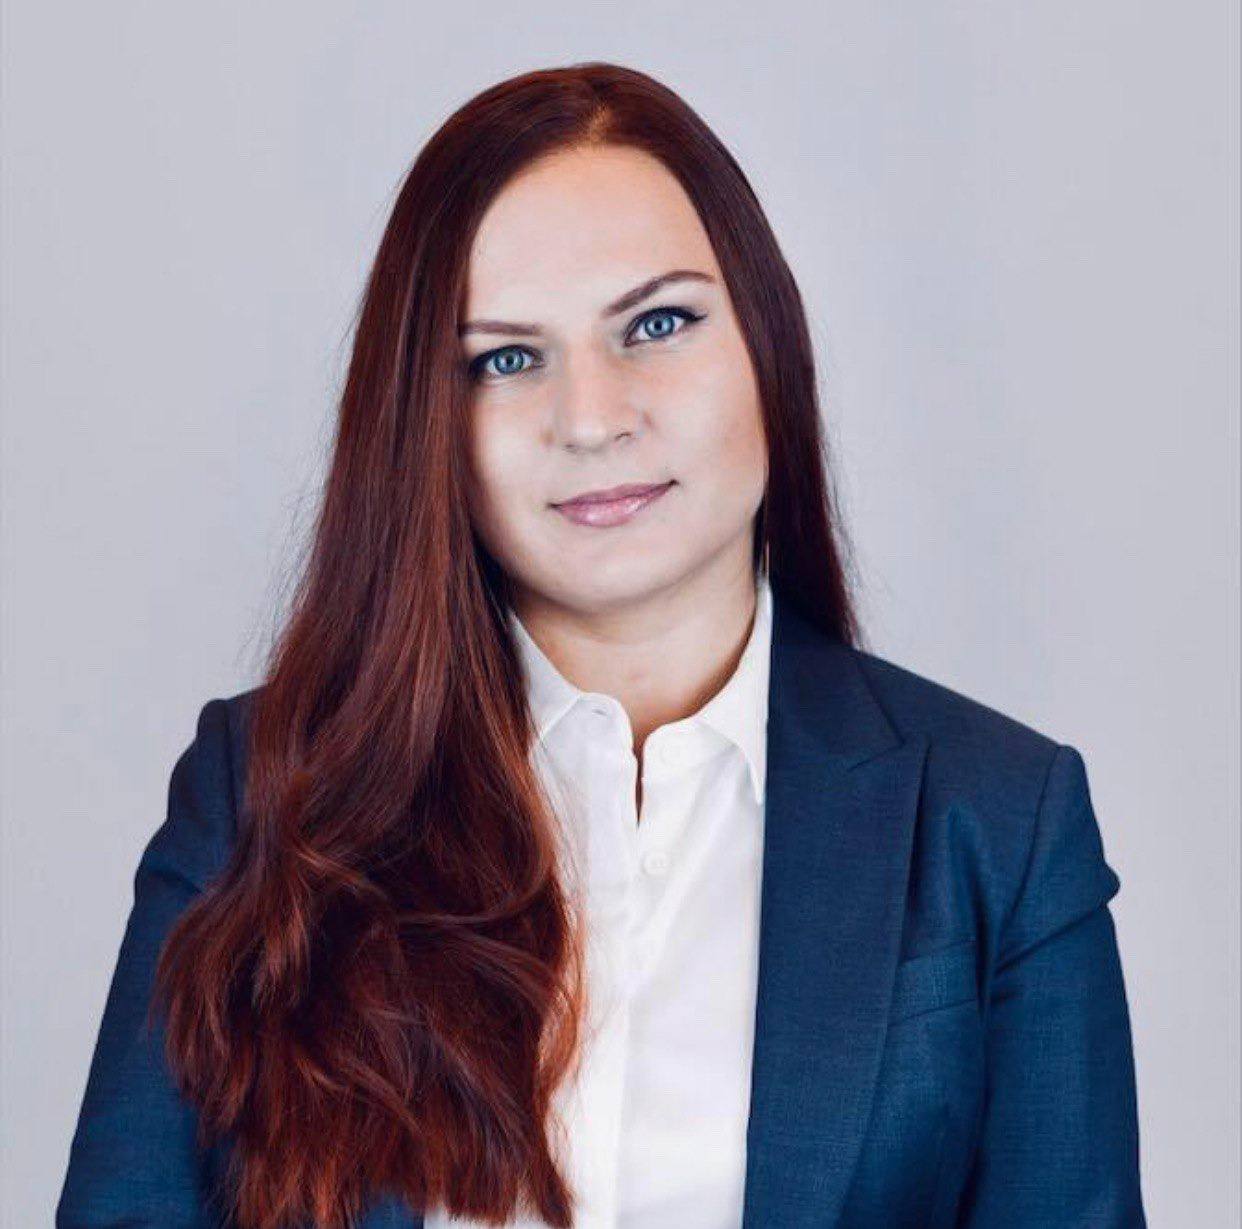 Мария Гераськова, руководитель проектов цифровизации ООО “РЖД-Технологии”